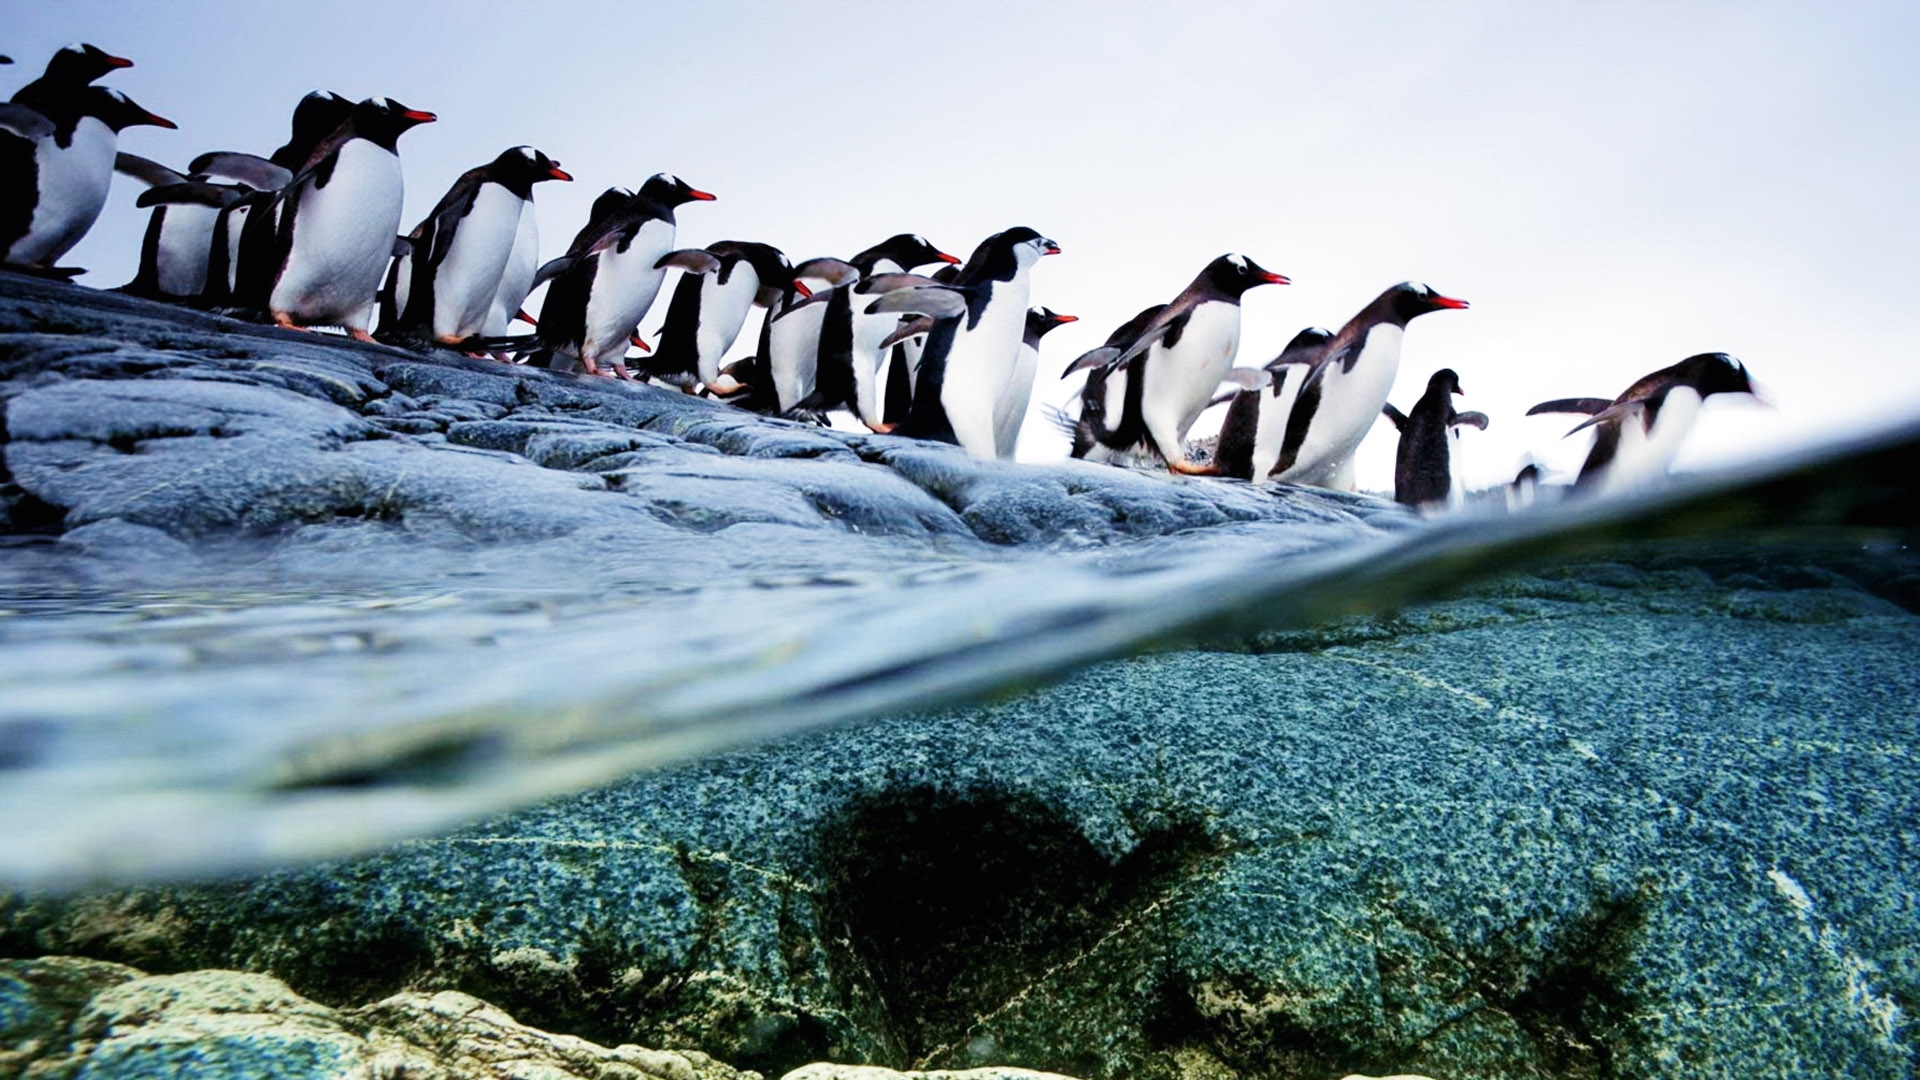 penguins, Animals, Birds, Ocean, Sea, Underwater, Swim, Water